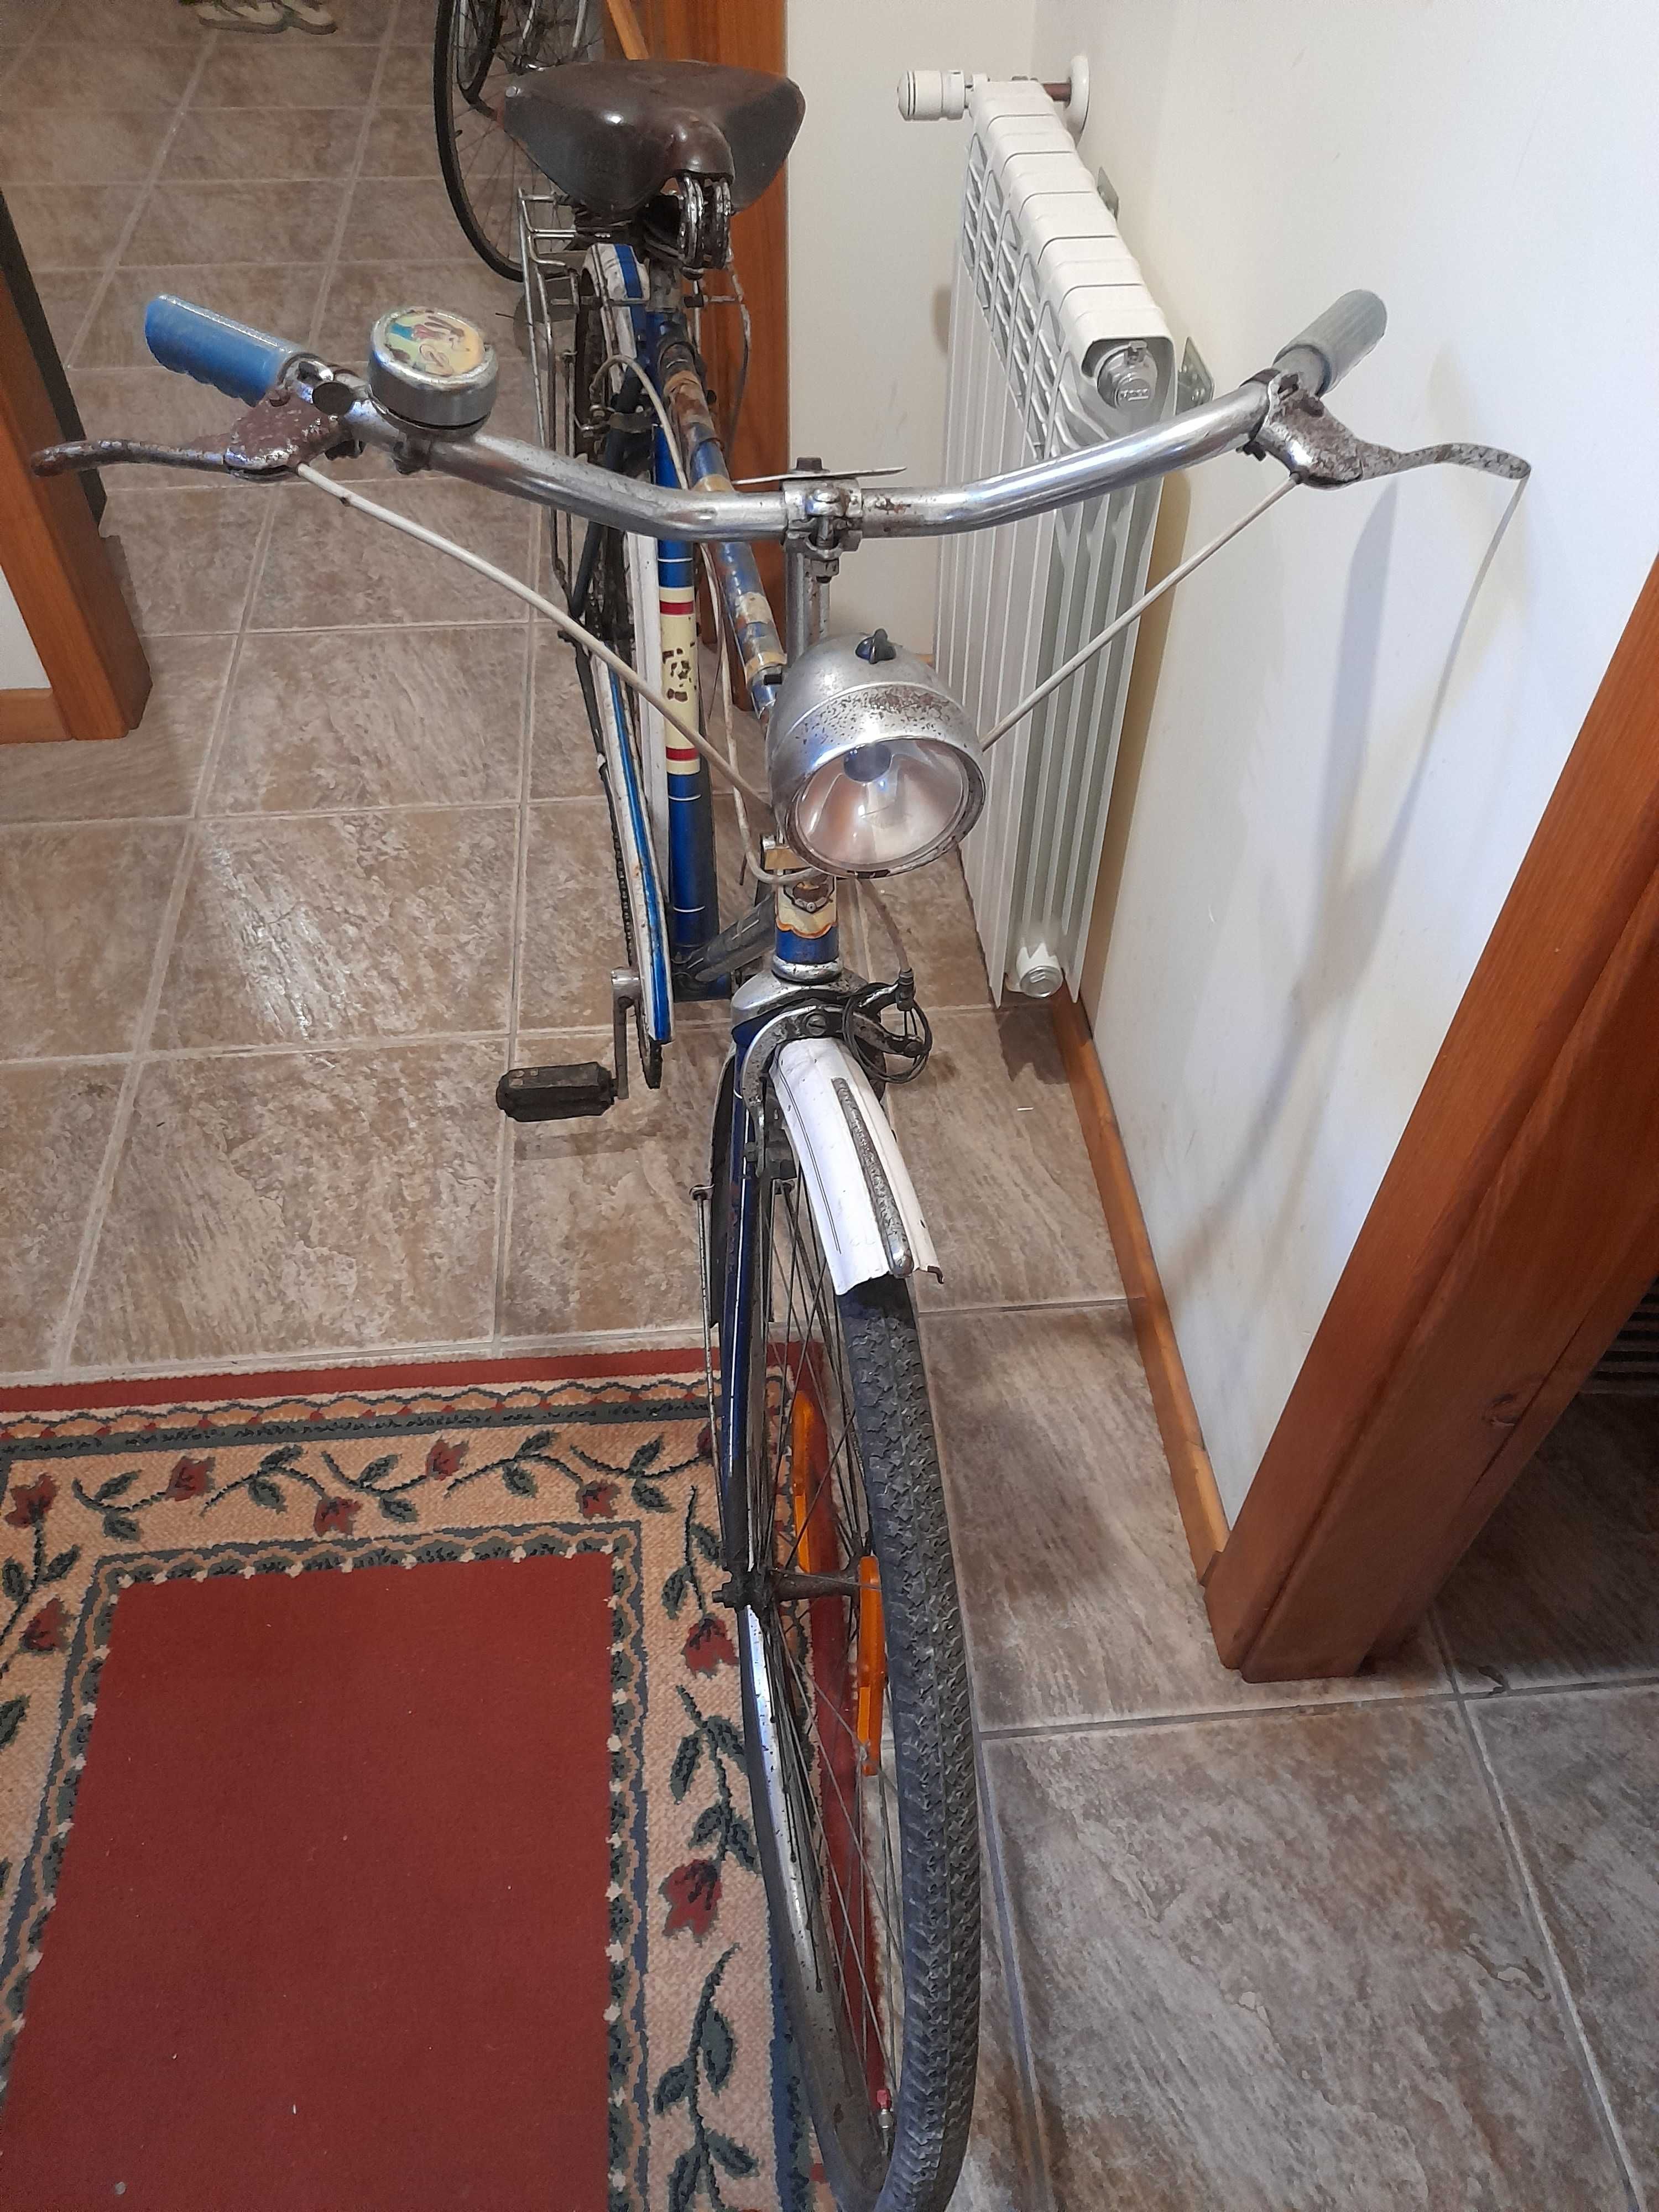 Bicicletas pasteleira antiga e de corrida